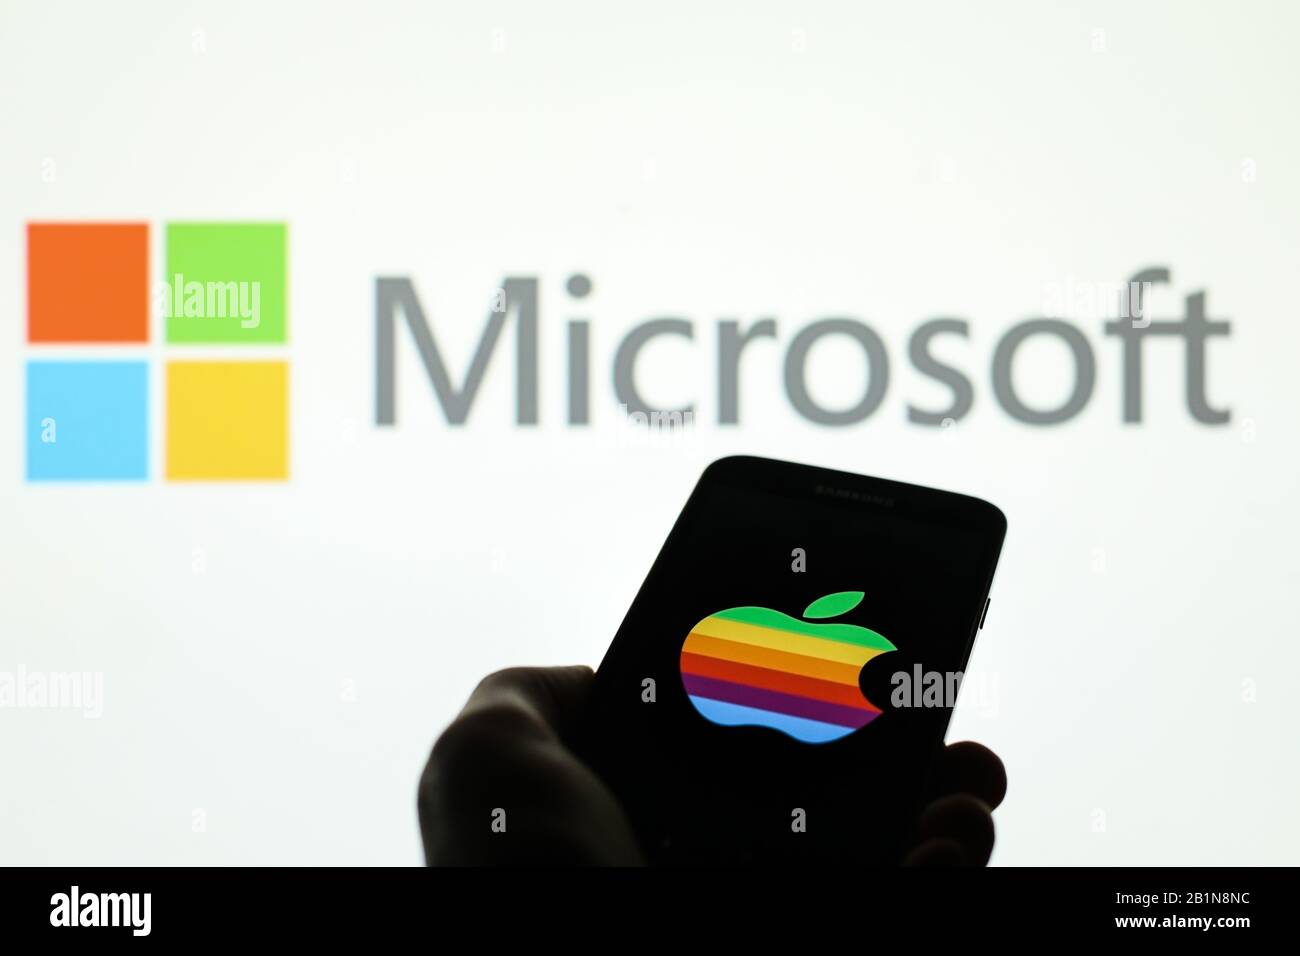 Das Apple Firmenlogo wird auf dem Smartphone-Bildschirm angezeigt, wobei das Microsoft-Logo im Hintergrund verschwommen zu sehen ist Stockfoto